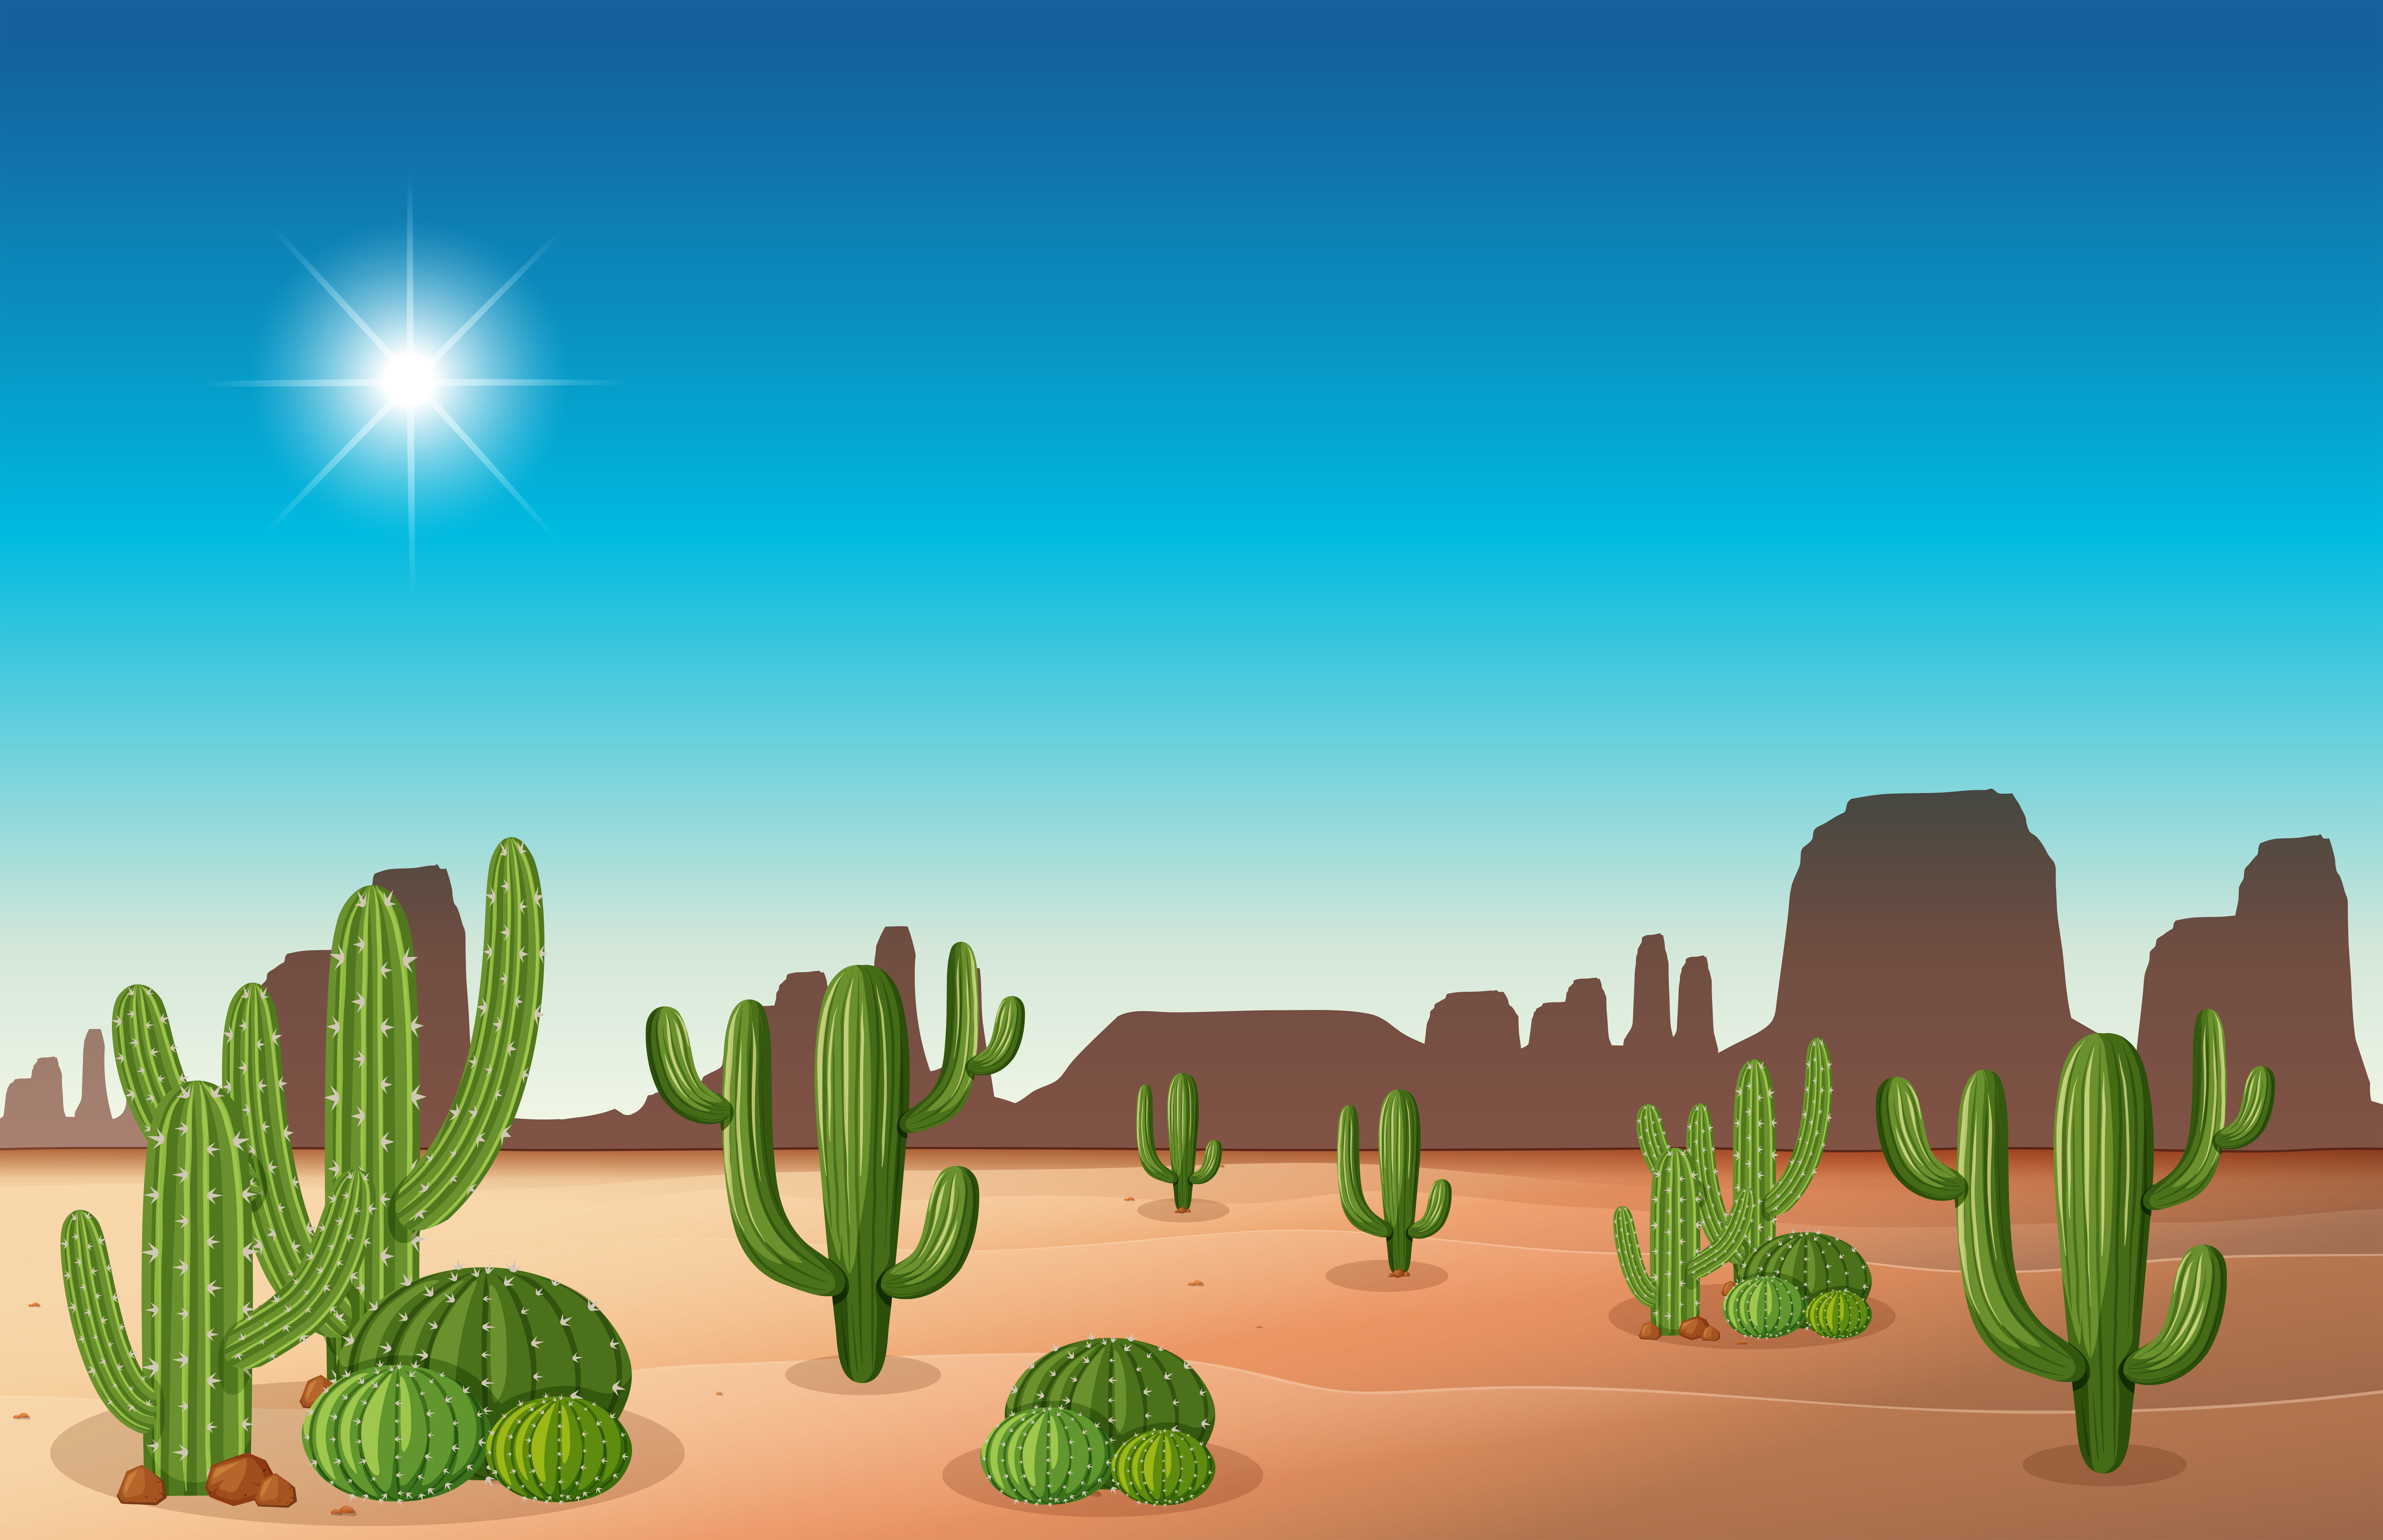 Desert scene with cactus 295644 Vector Art at Vecteezy